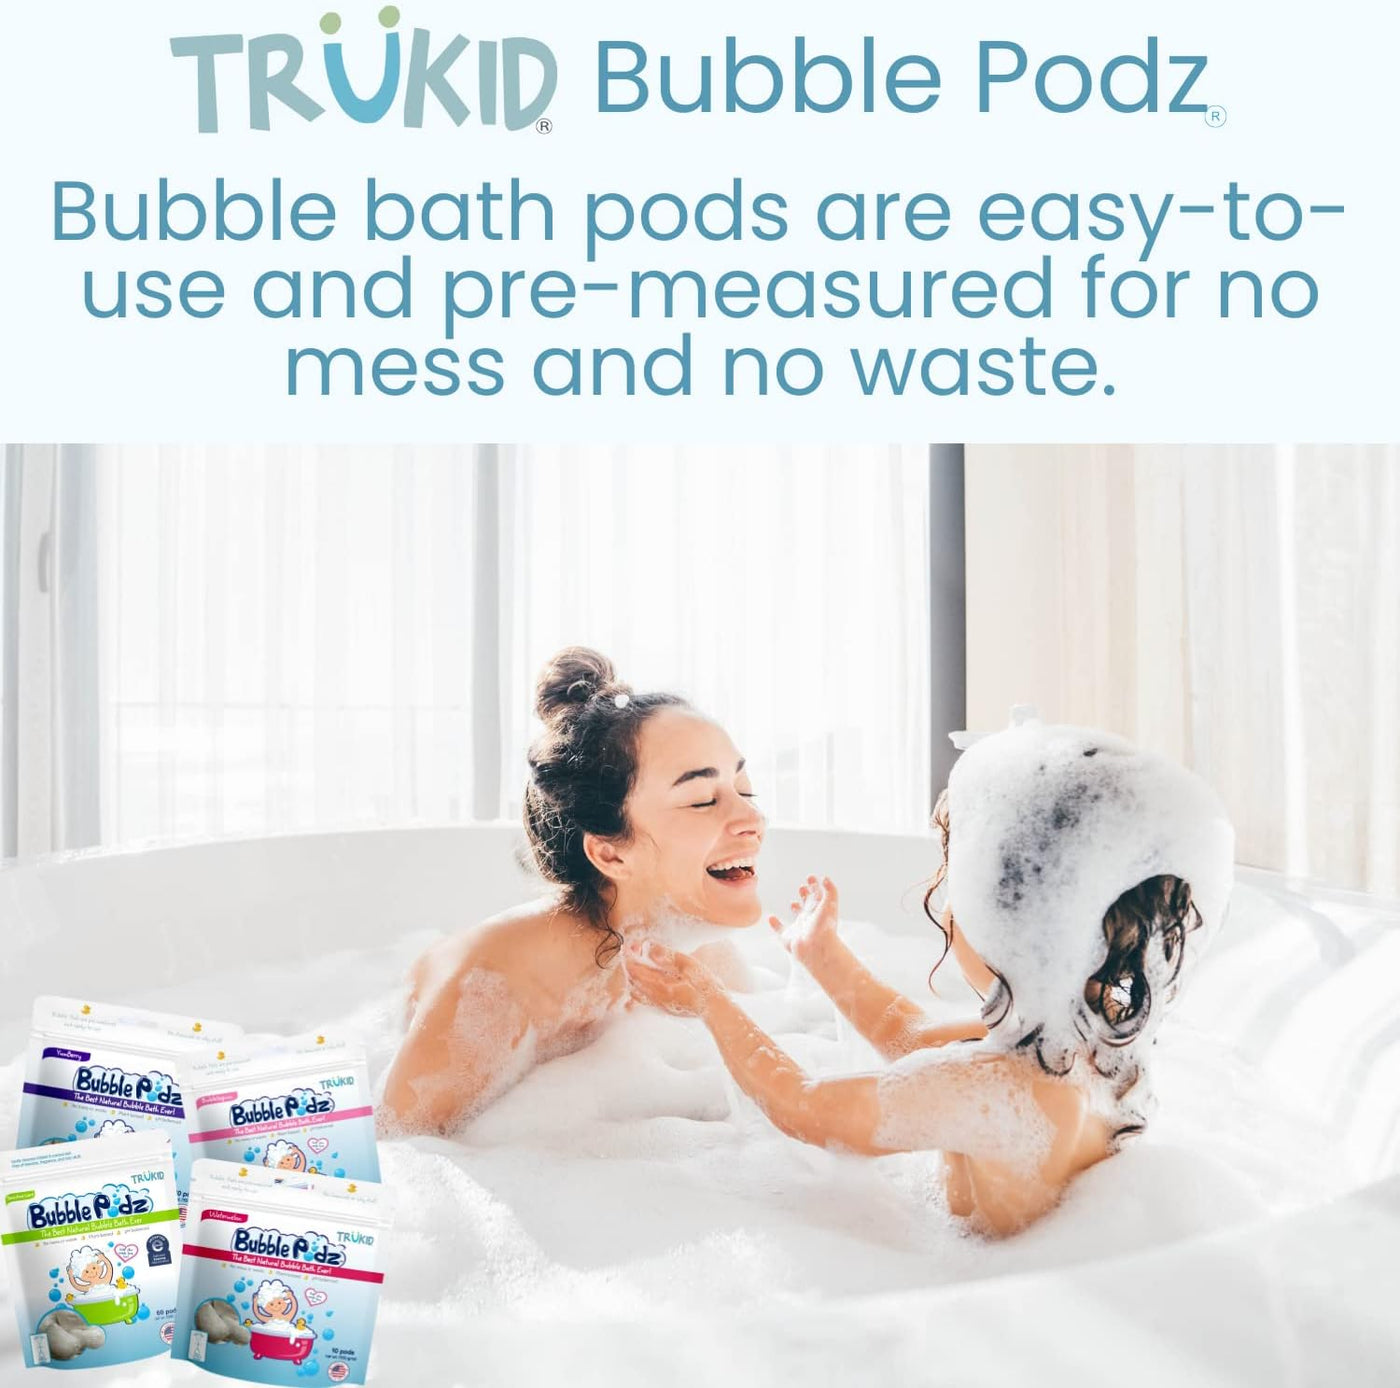 TruKid Bubble Podz: Watermelon Scented Bubble Bath